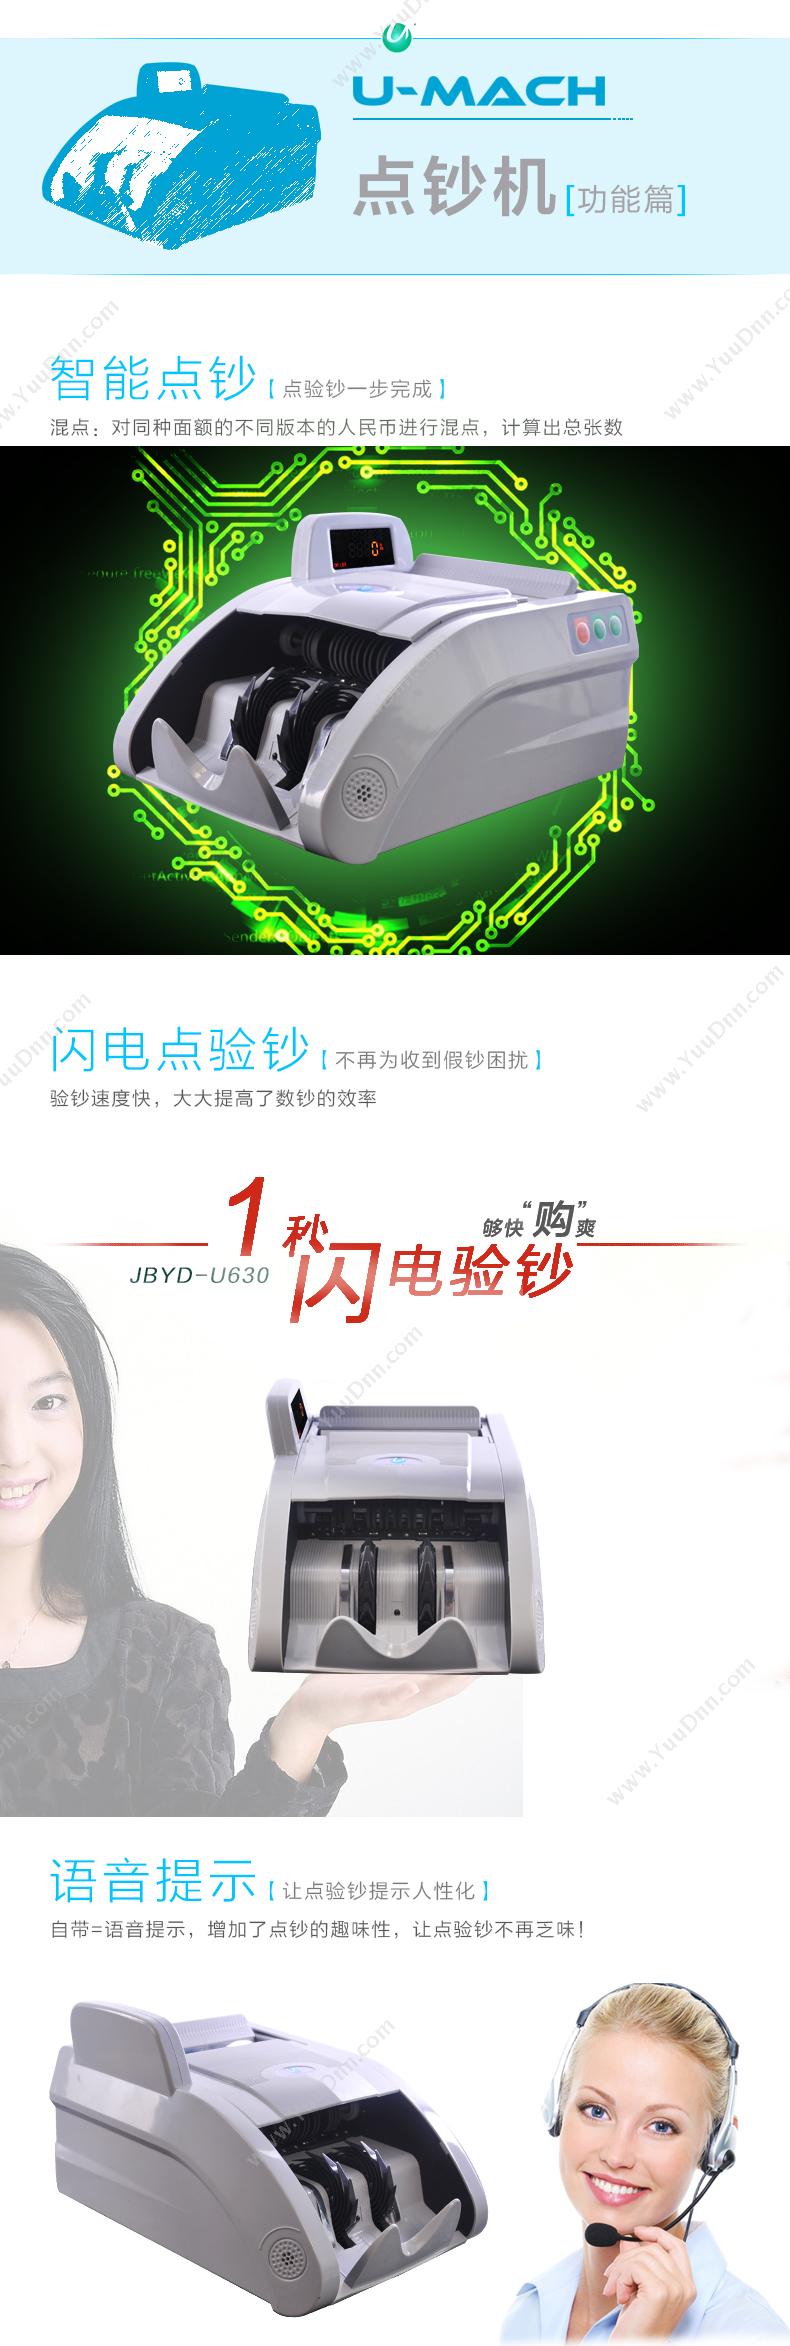 优玛仕 Umach JBYD-U630 智能 单屏点钞机